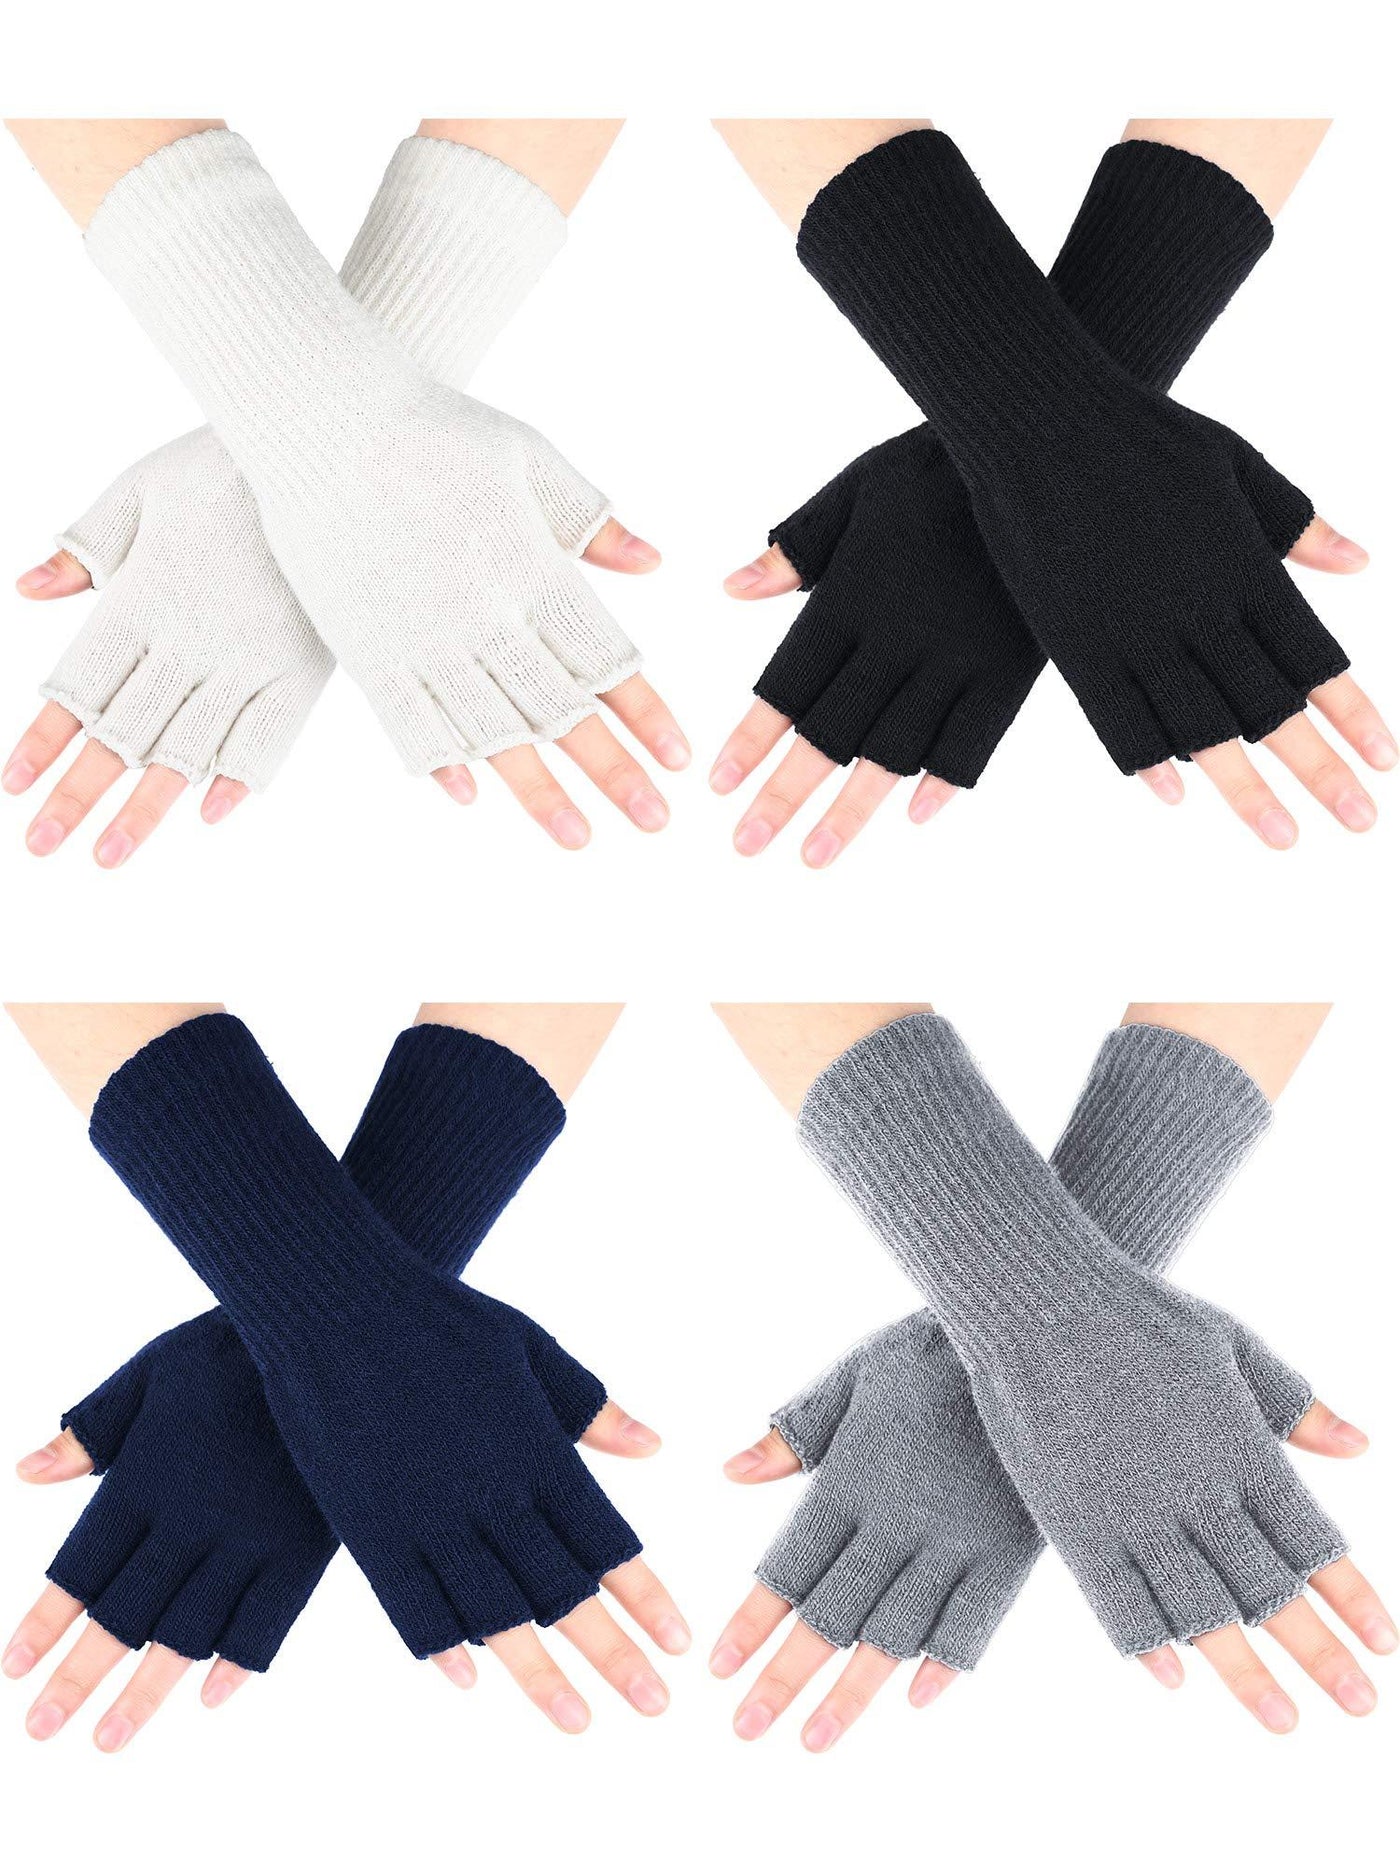 Women Knitted Fingerless Winter Arm Warmer Gloves Gray Black